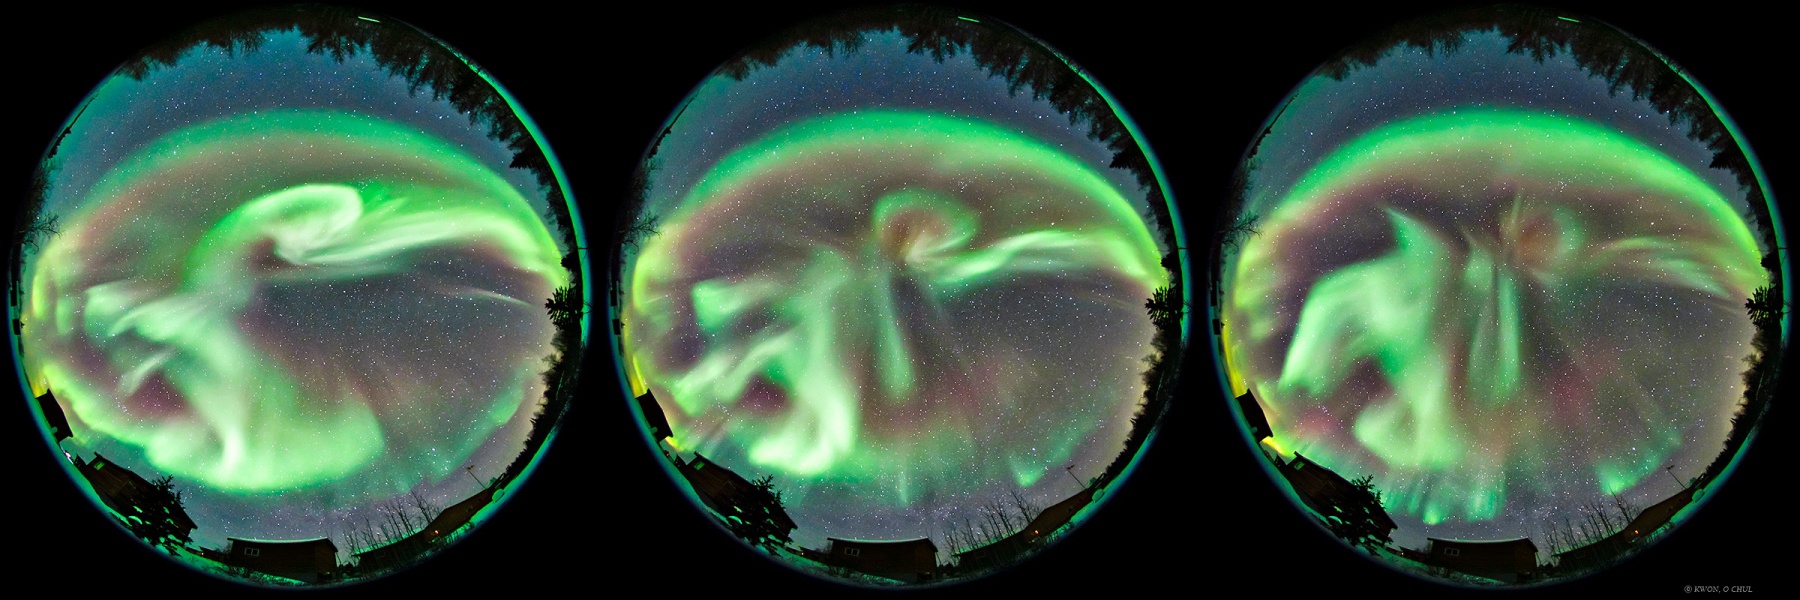 Nebeneinander sind drei Kreise angeordnet, jeder zeigt den ganzen Himmel voller grüner Polarlichter, die auf jedem Kreis anders aussehen.